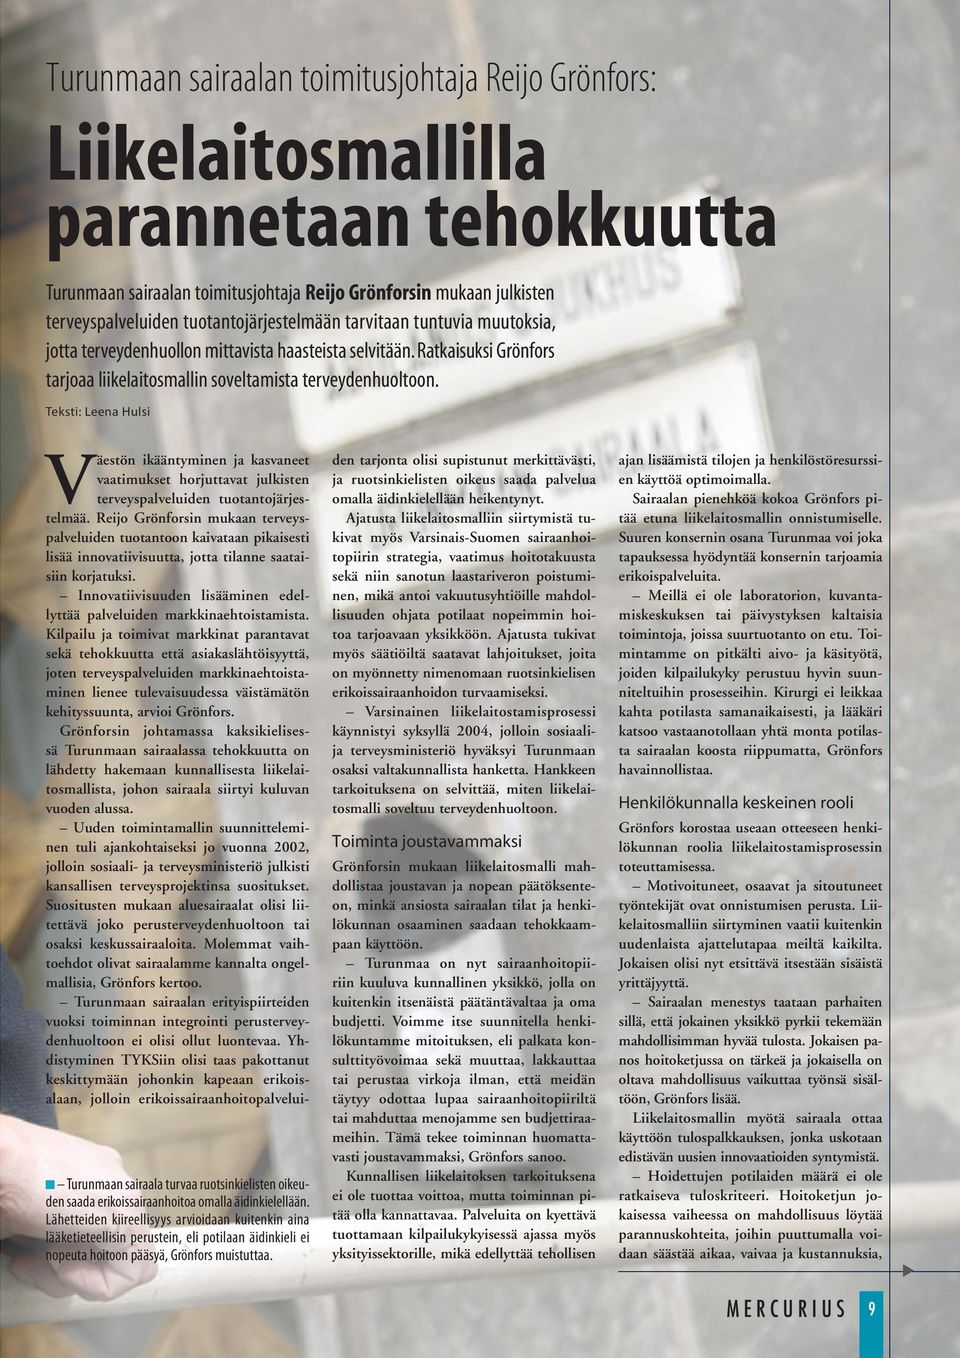 Teksti: Leena Hulsi Väestön ikääntyminen ja kasvaneet vaatimukset horjuttavat julkisten terveyspalveluiden tuotantojärjestelmää.